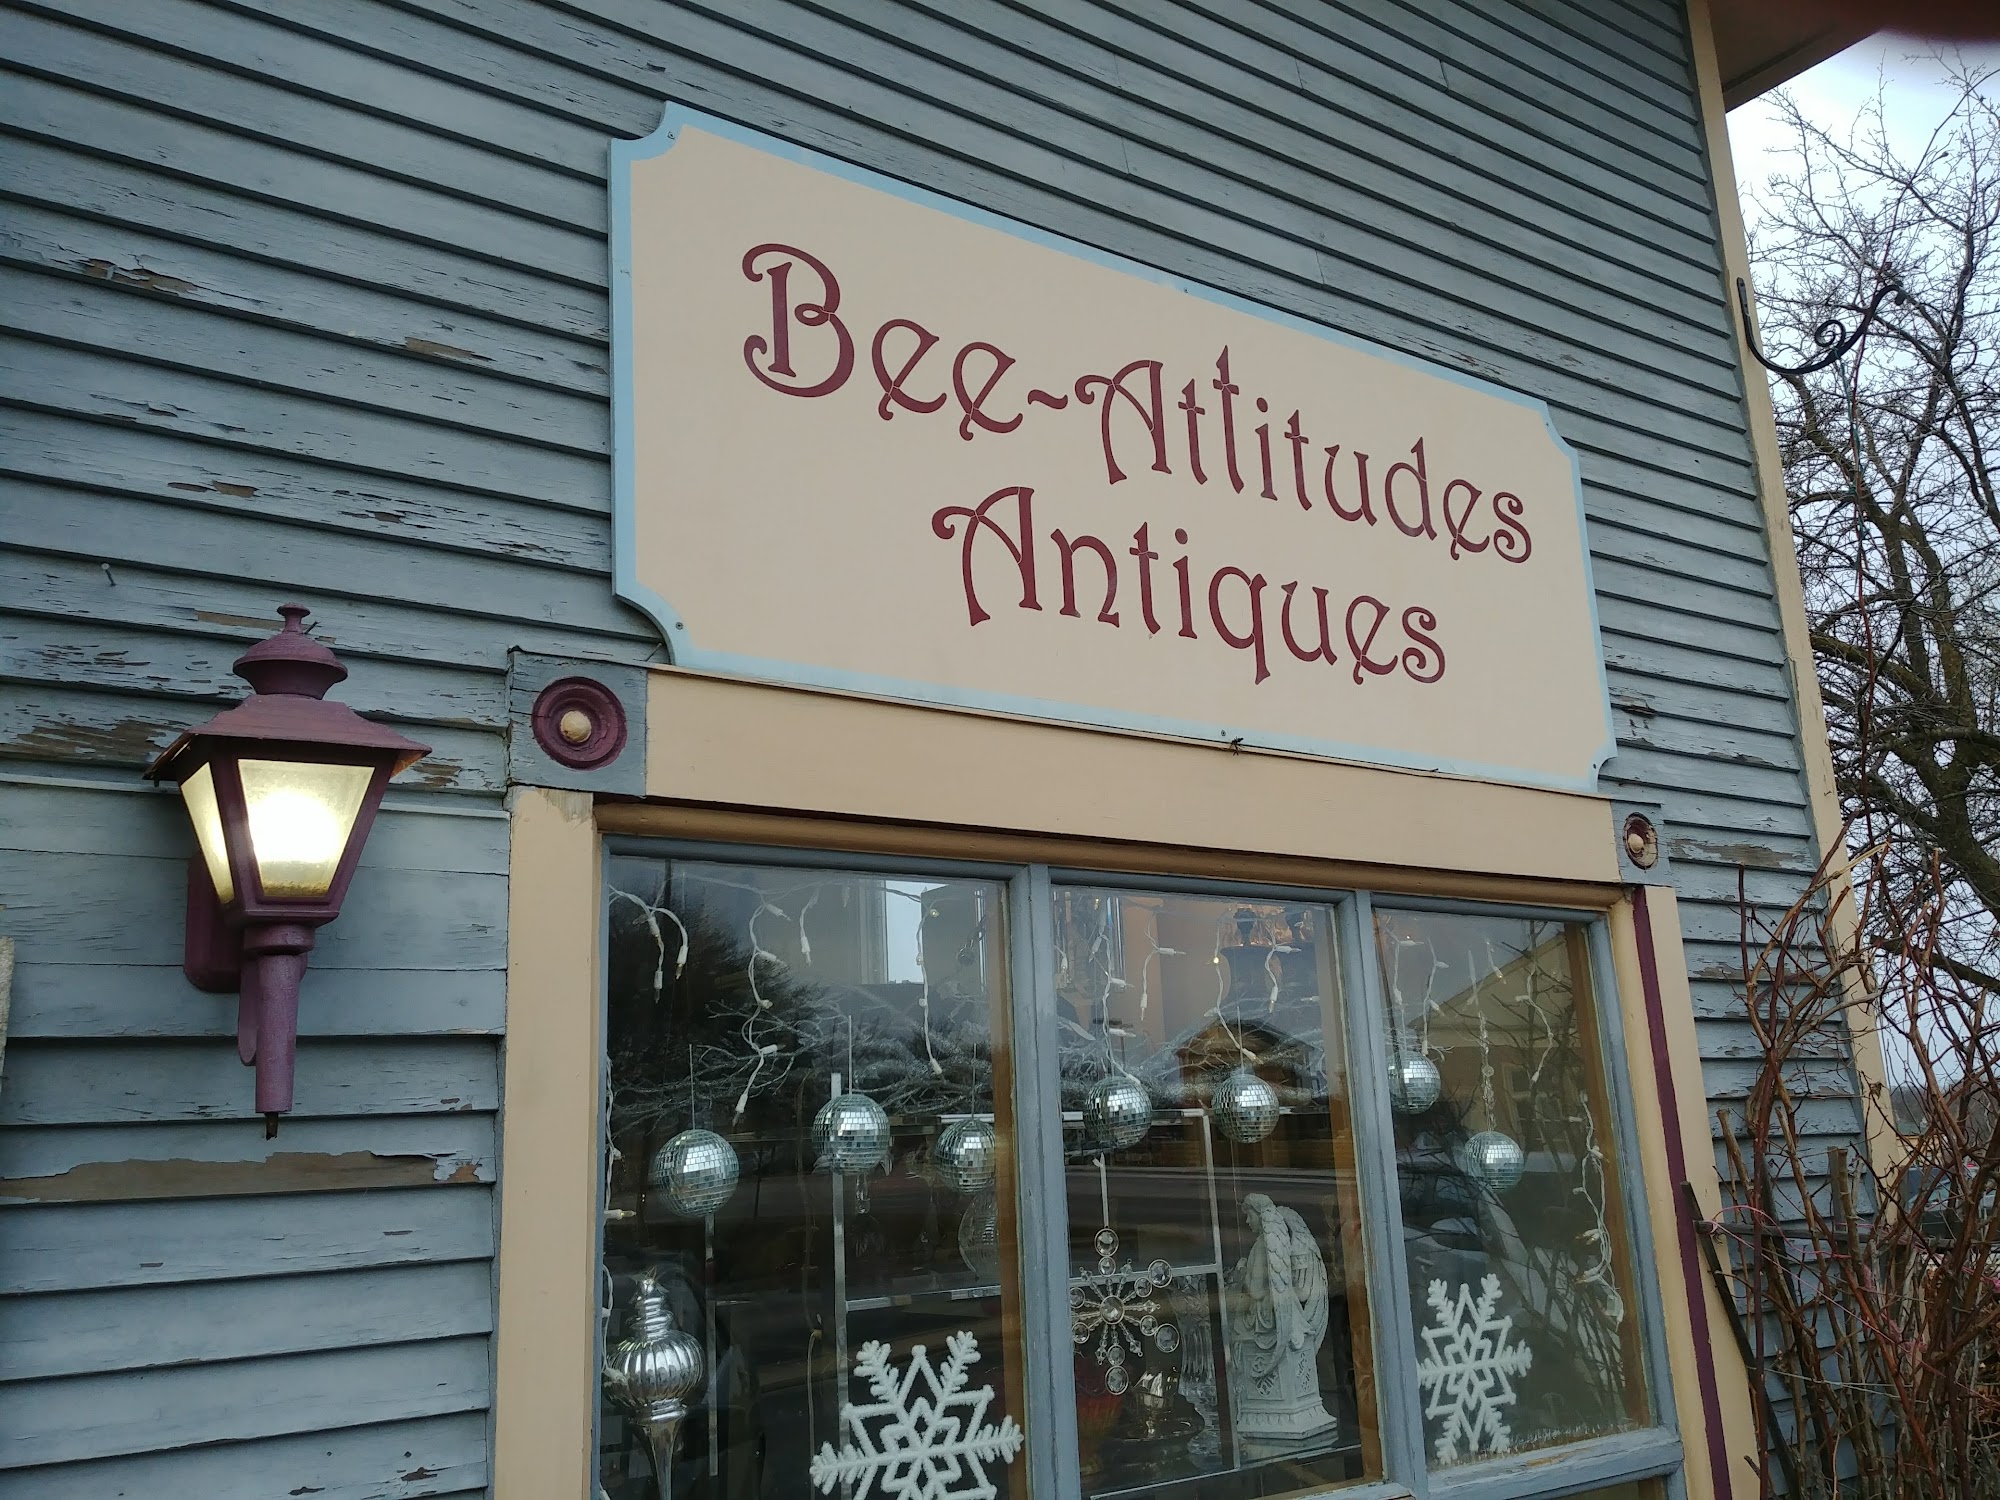 Bee-Attitudes Antiques